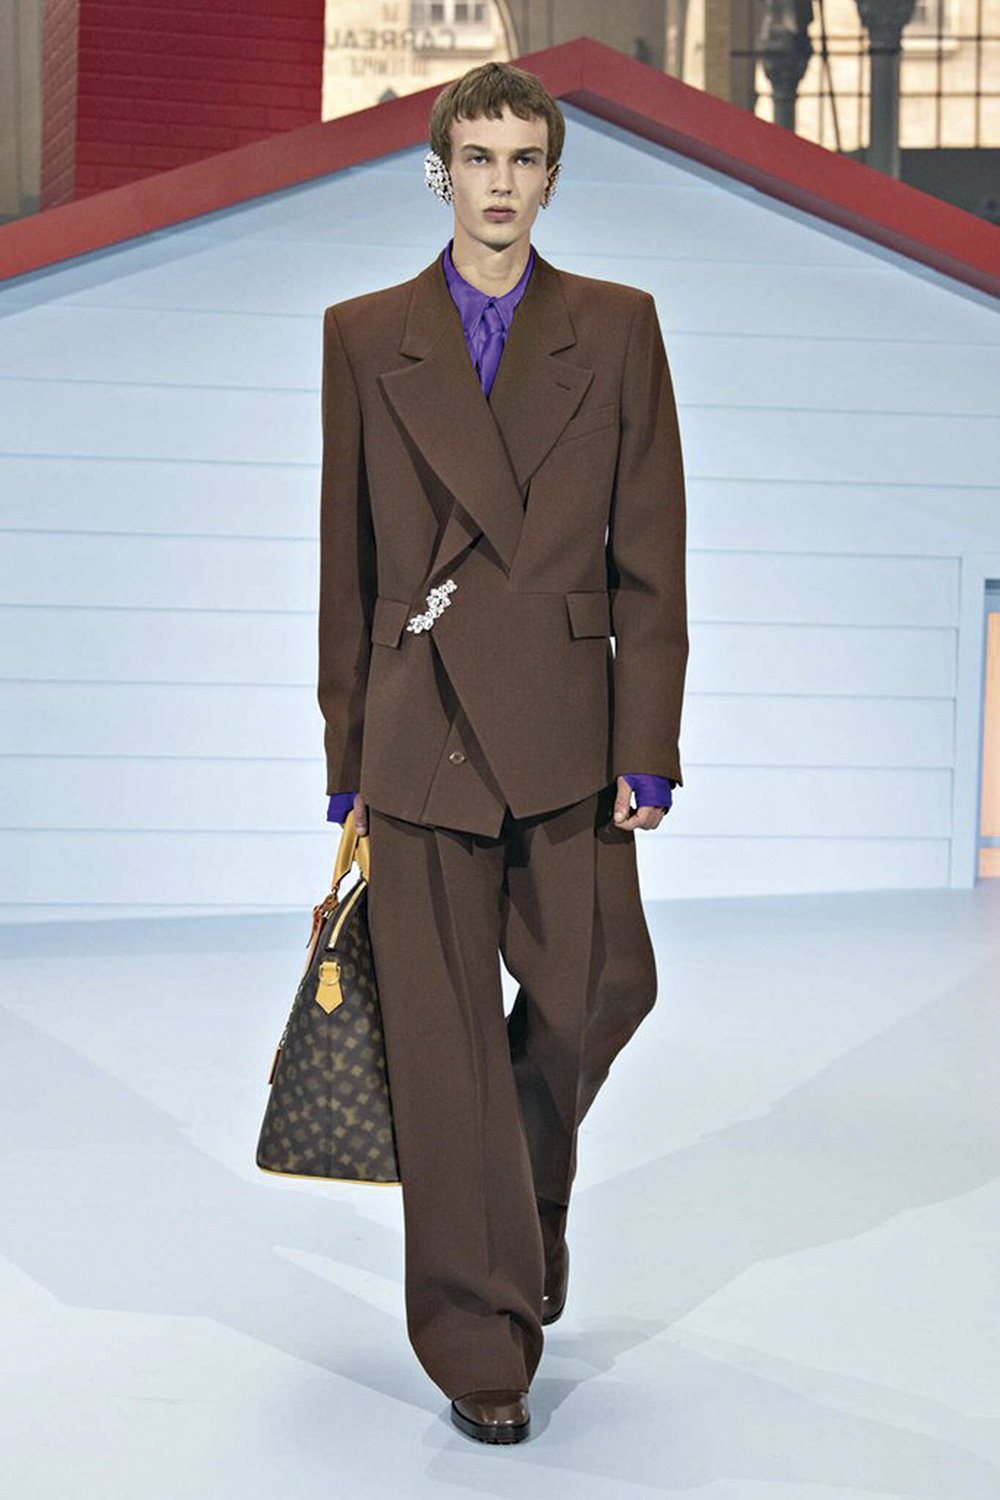 PASSADO E FUTURO - Louis Vuitton: o marrom é um clássico neste tipo de vestimenta, mas o modelo tem ombros amplos e estruturados, as mangas, longas, enquanto as calças aparecem mais largas do que as usadas hoje -